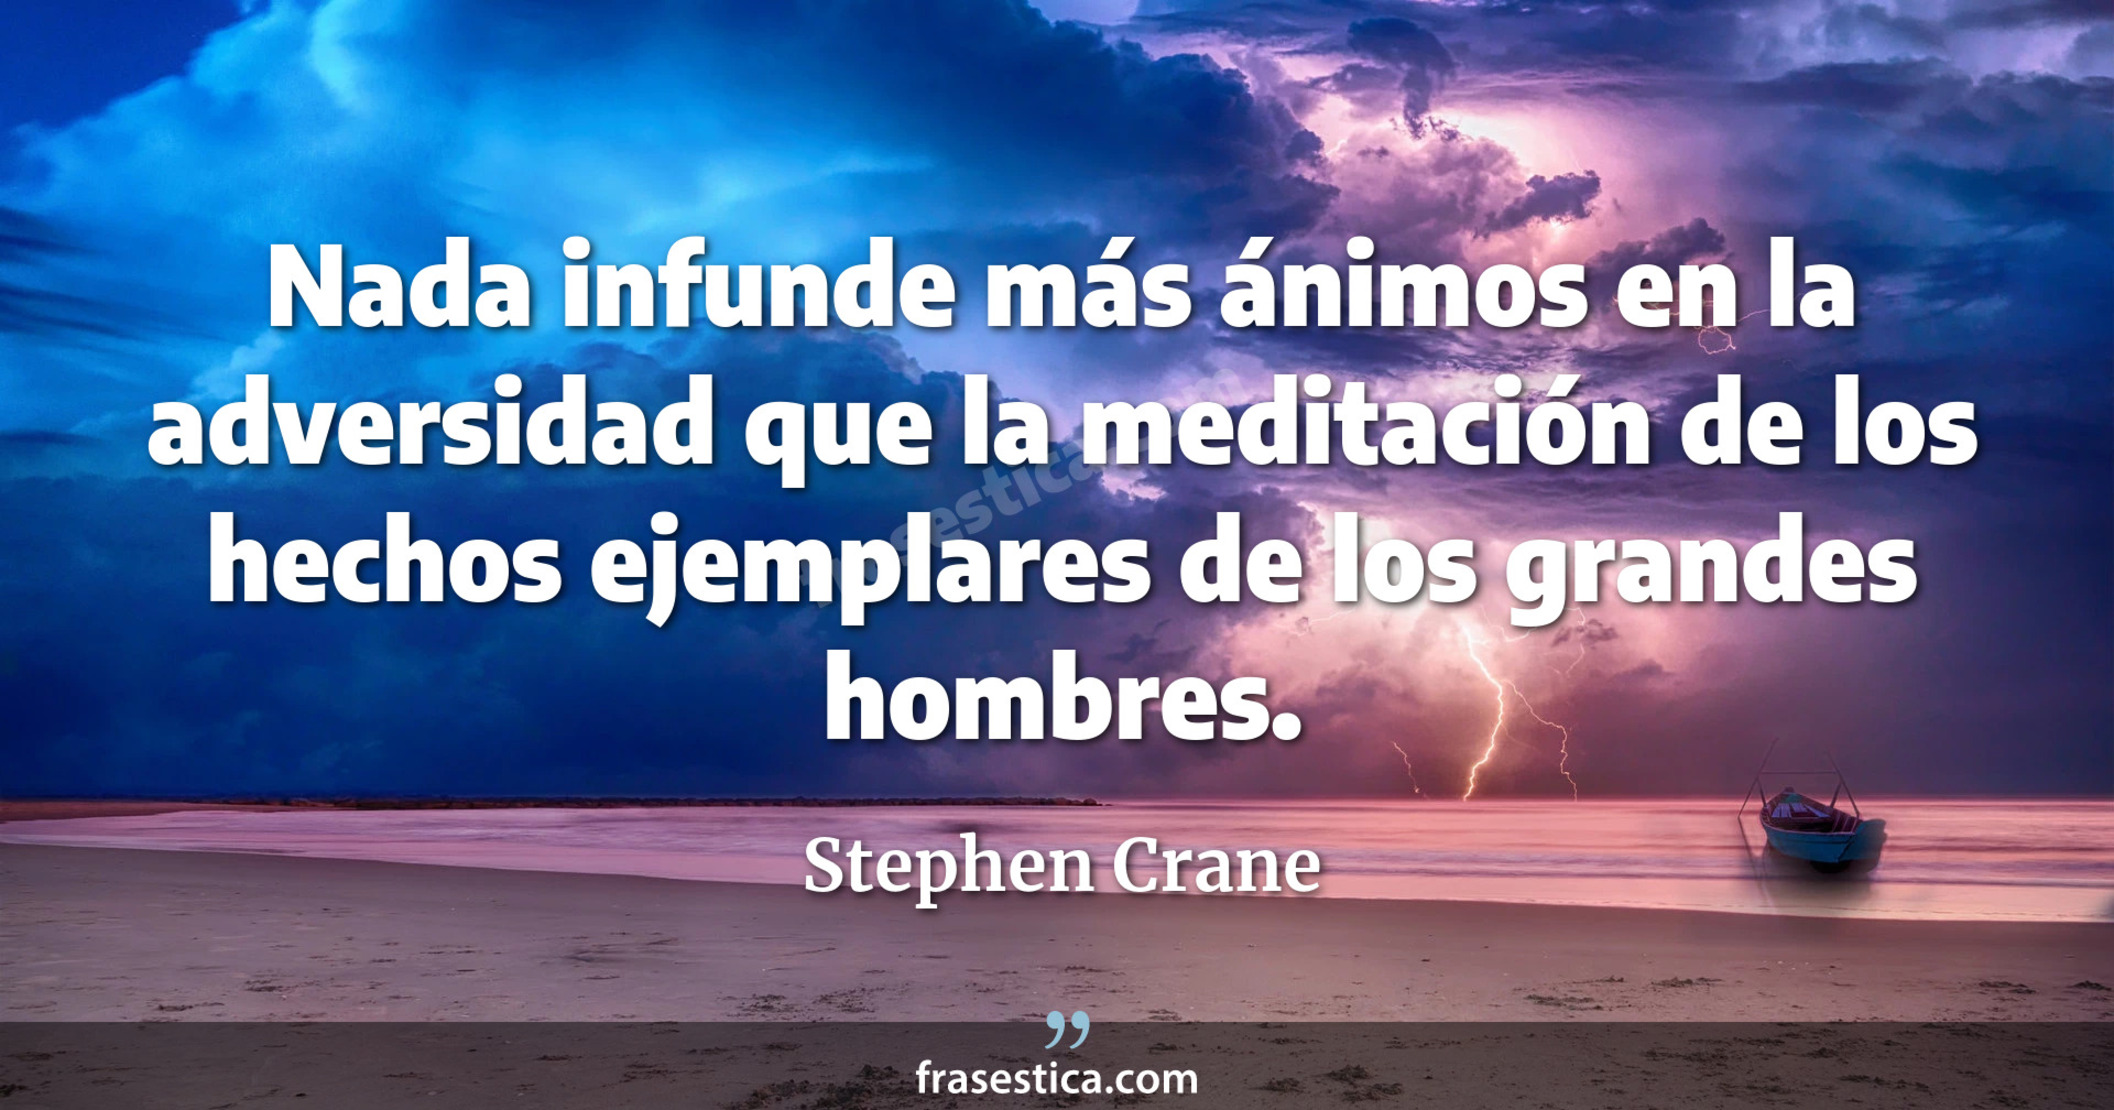 Nada infunde más ánimos en la adversidad que la meditación de los hechos ejemplares de los grandes hombres. - Stephen Crane